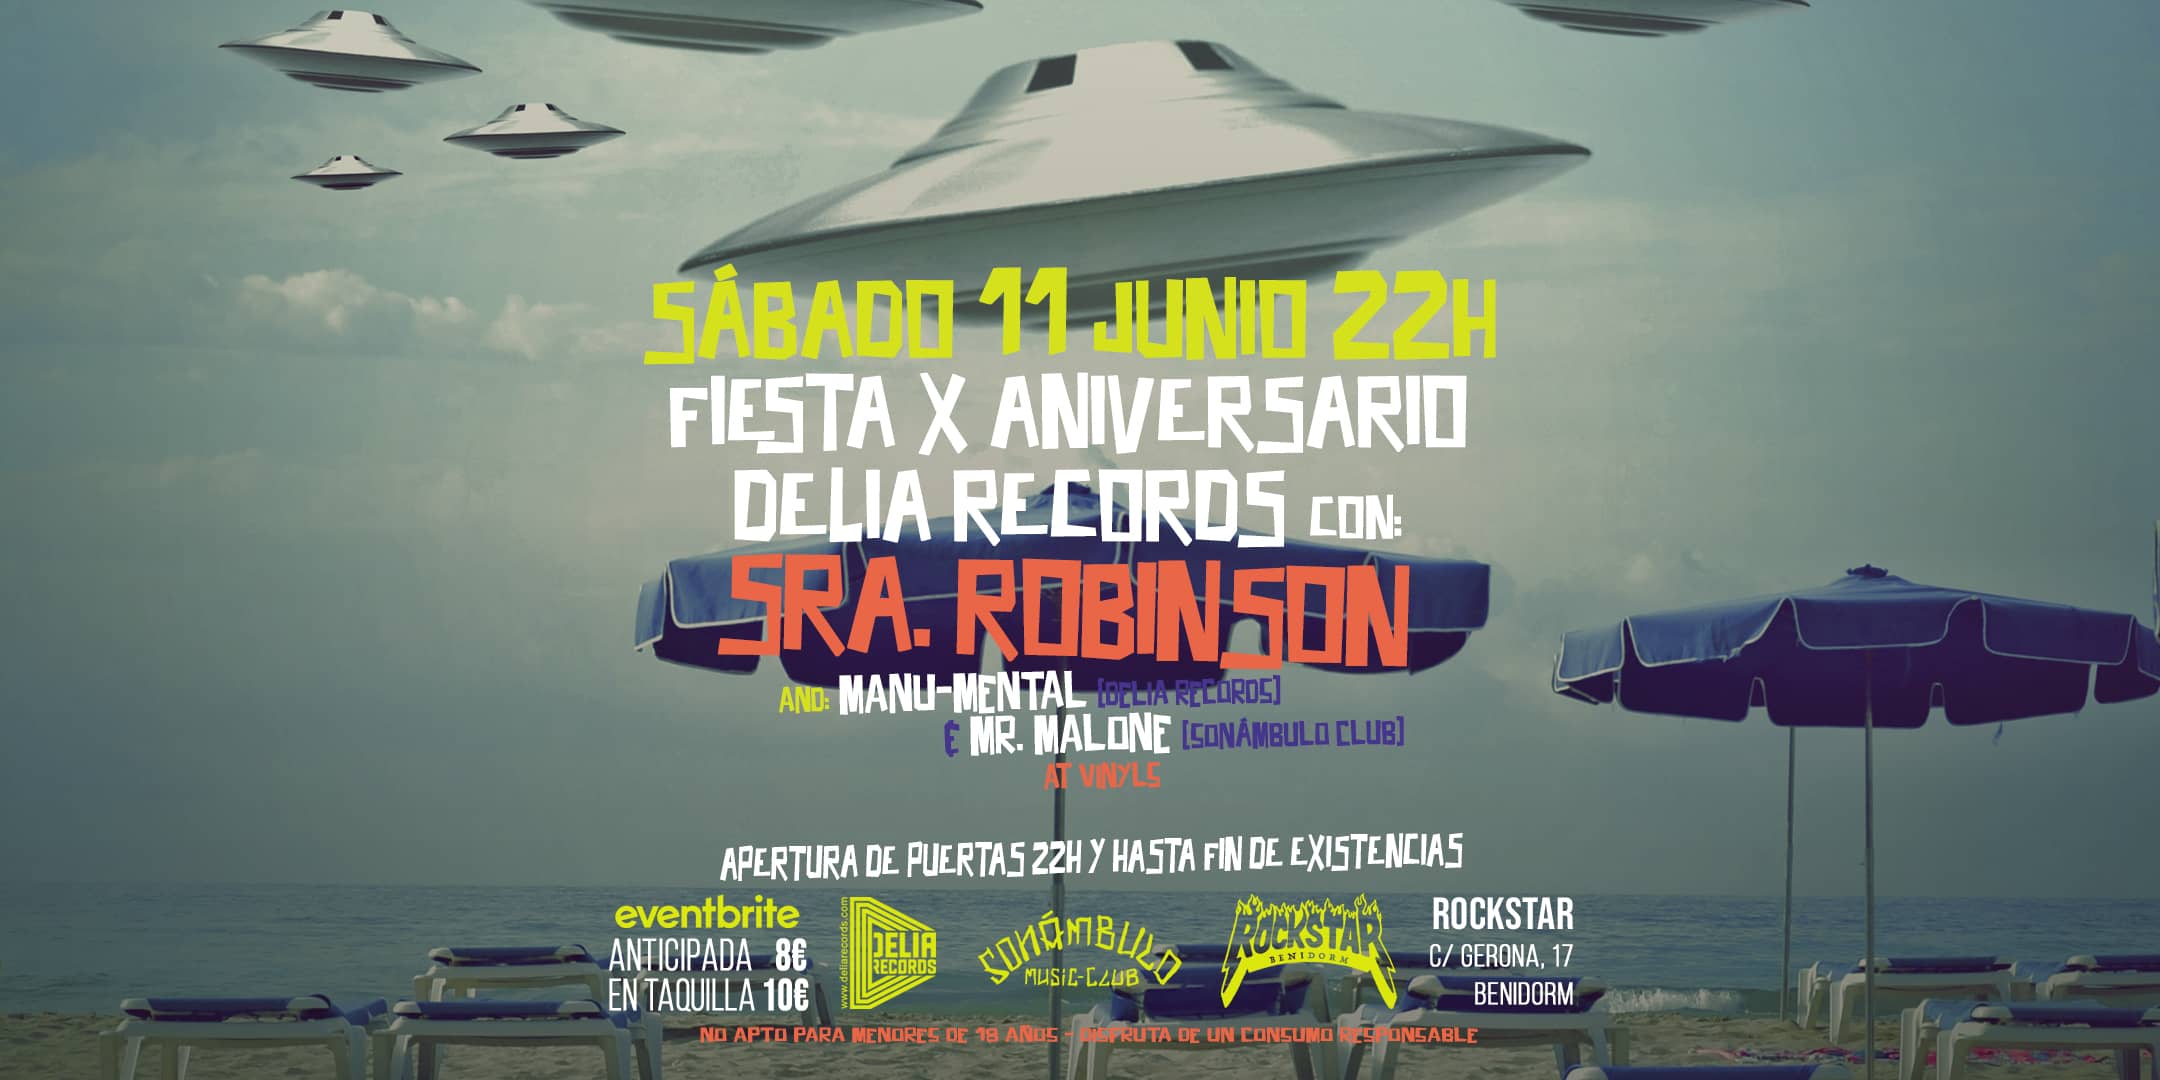 X Aniversario Delia Records [Benidorm @ Rockstar] SRA. ROBINSON